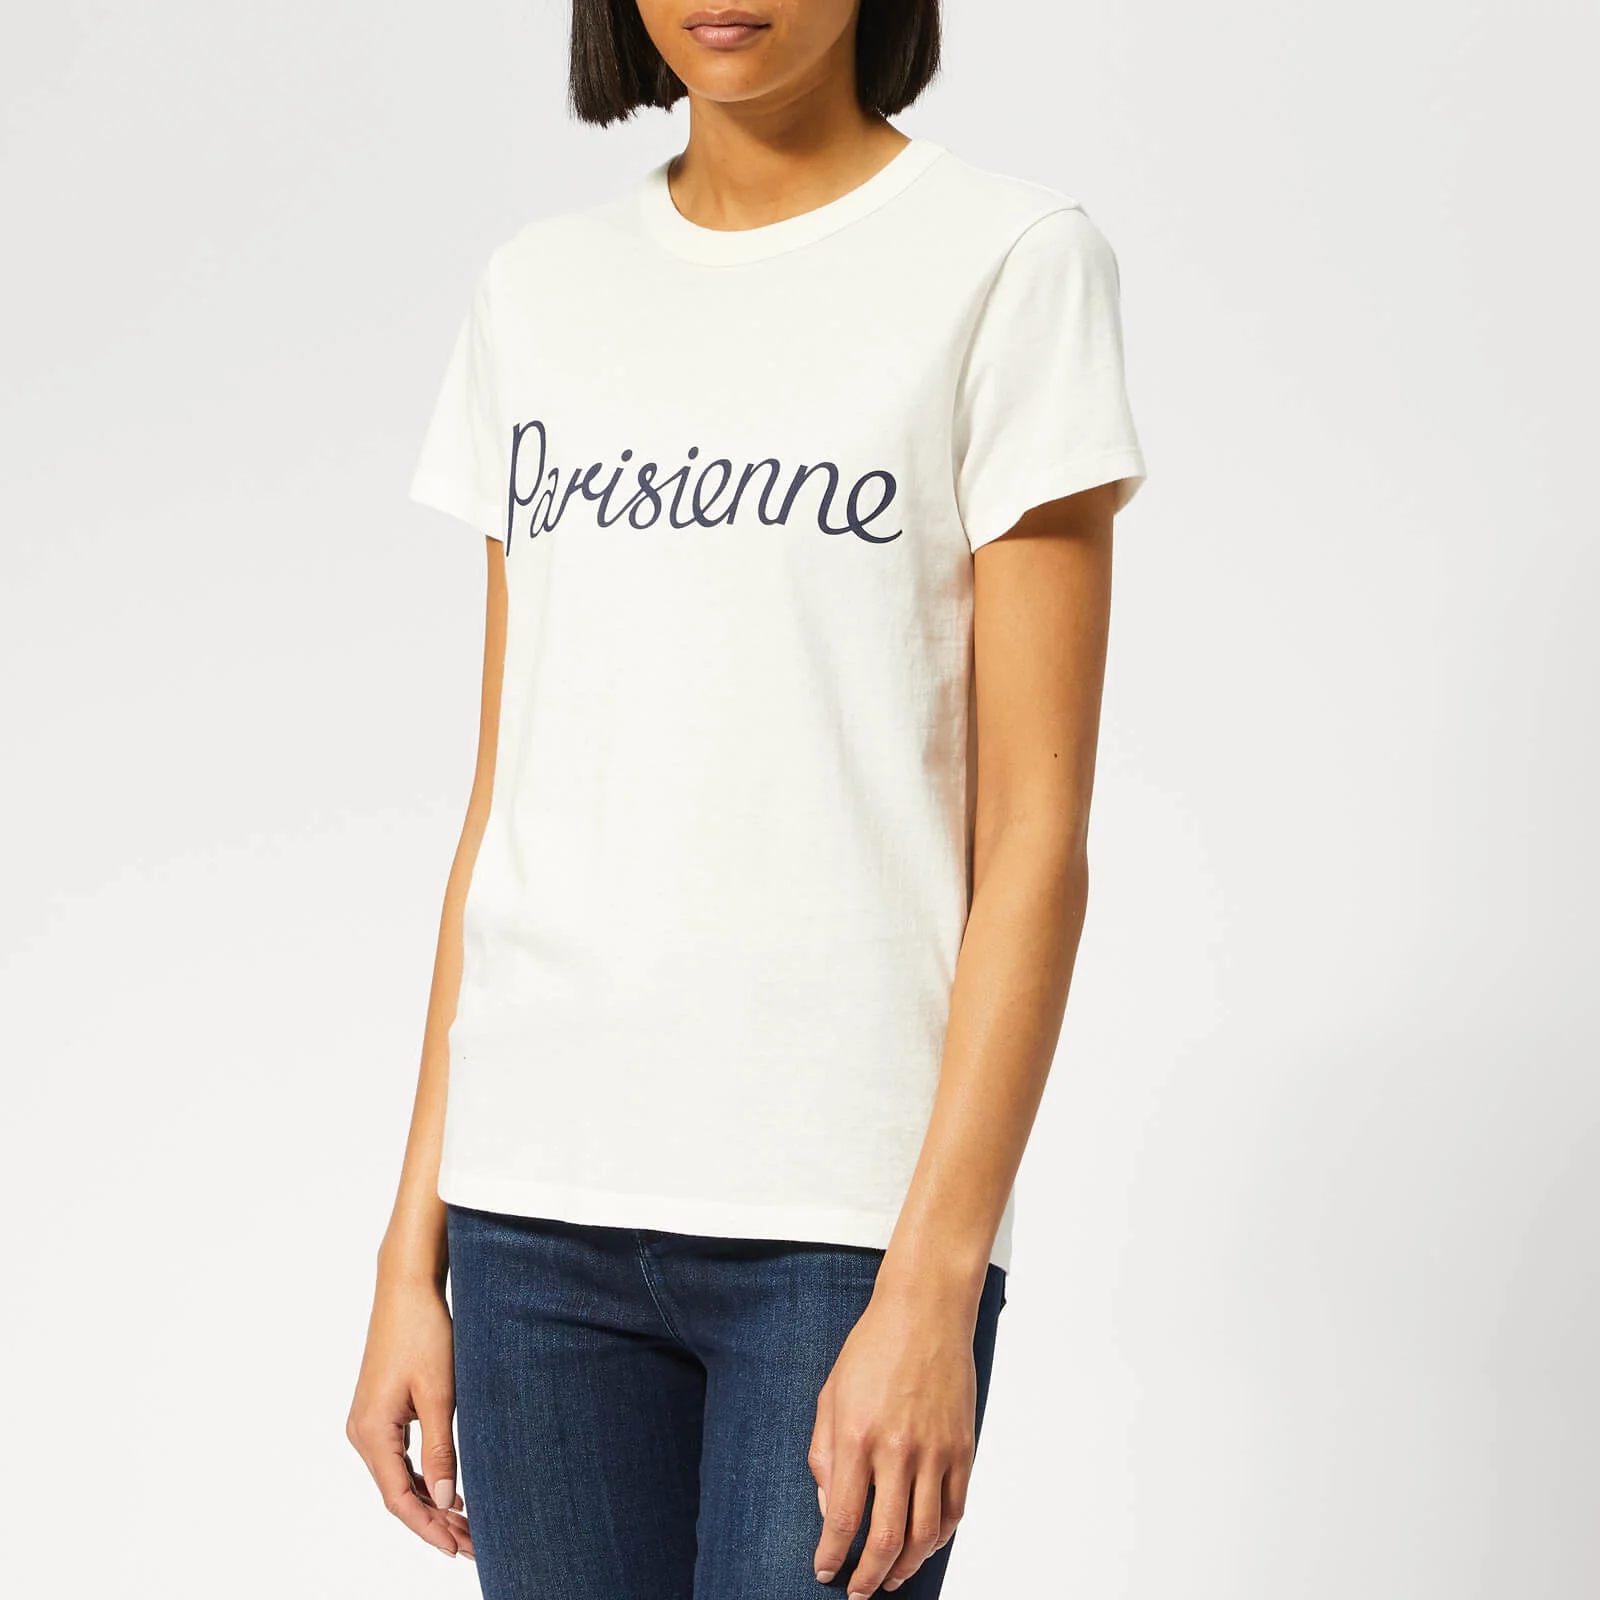 Maison Kitsuné Women's T-Shirt Parisienne - Latte Image 1